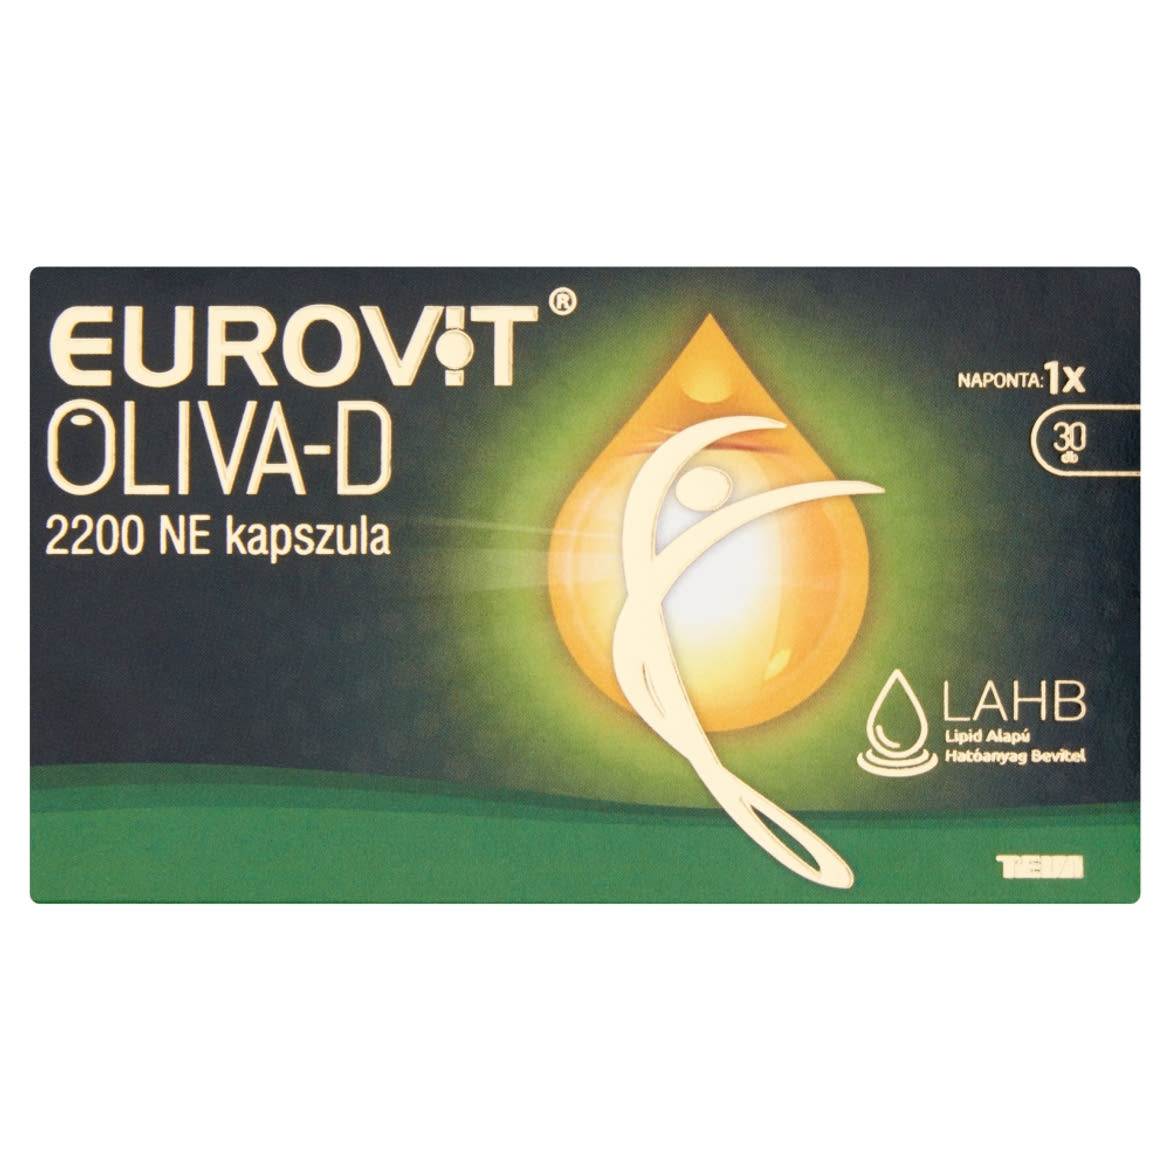 Eurovit Oliva-D 2200 NE kapszula